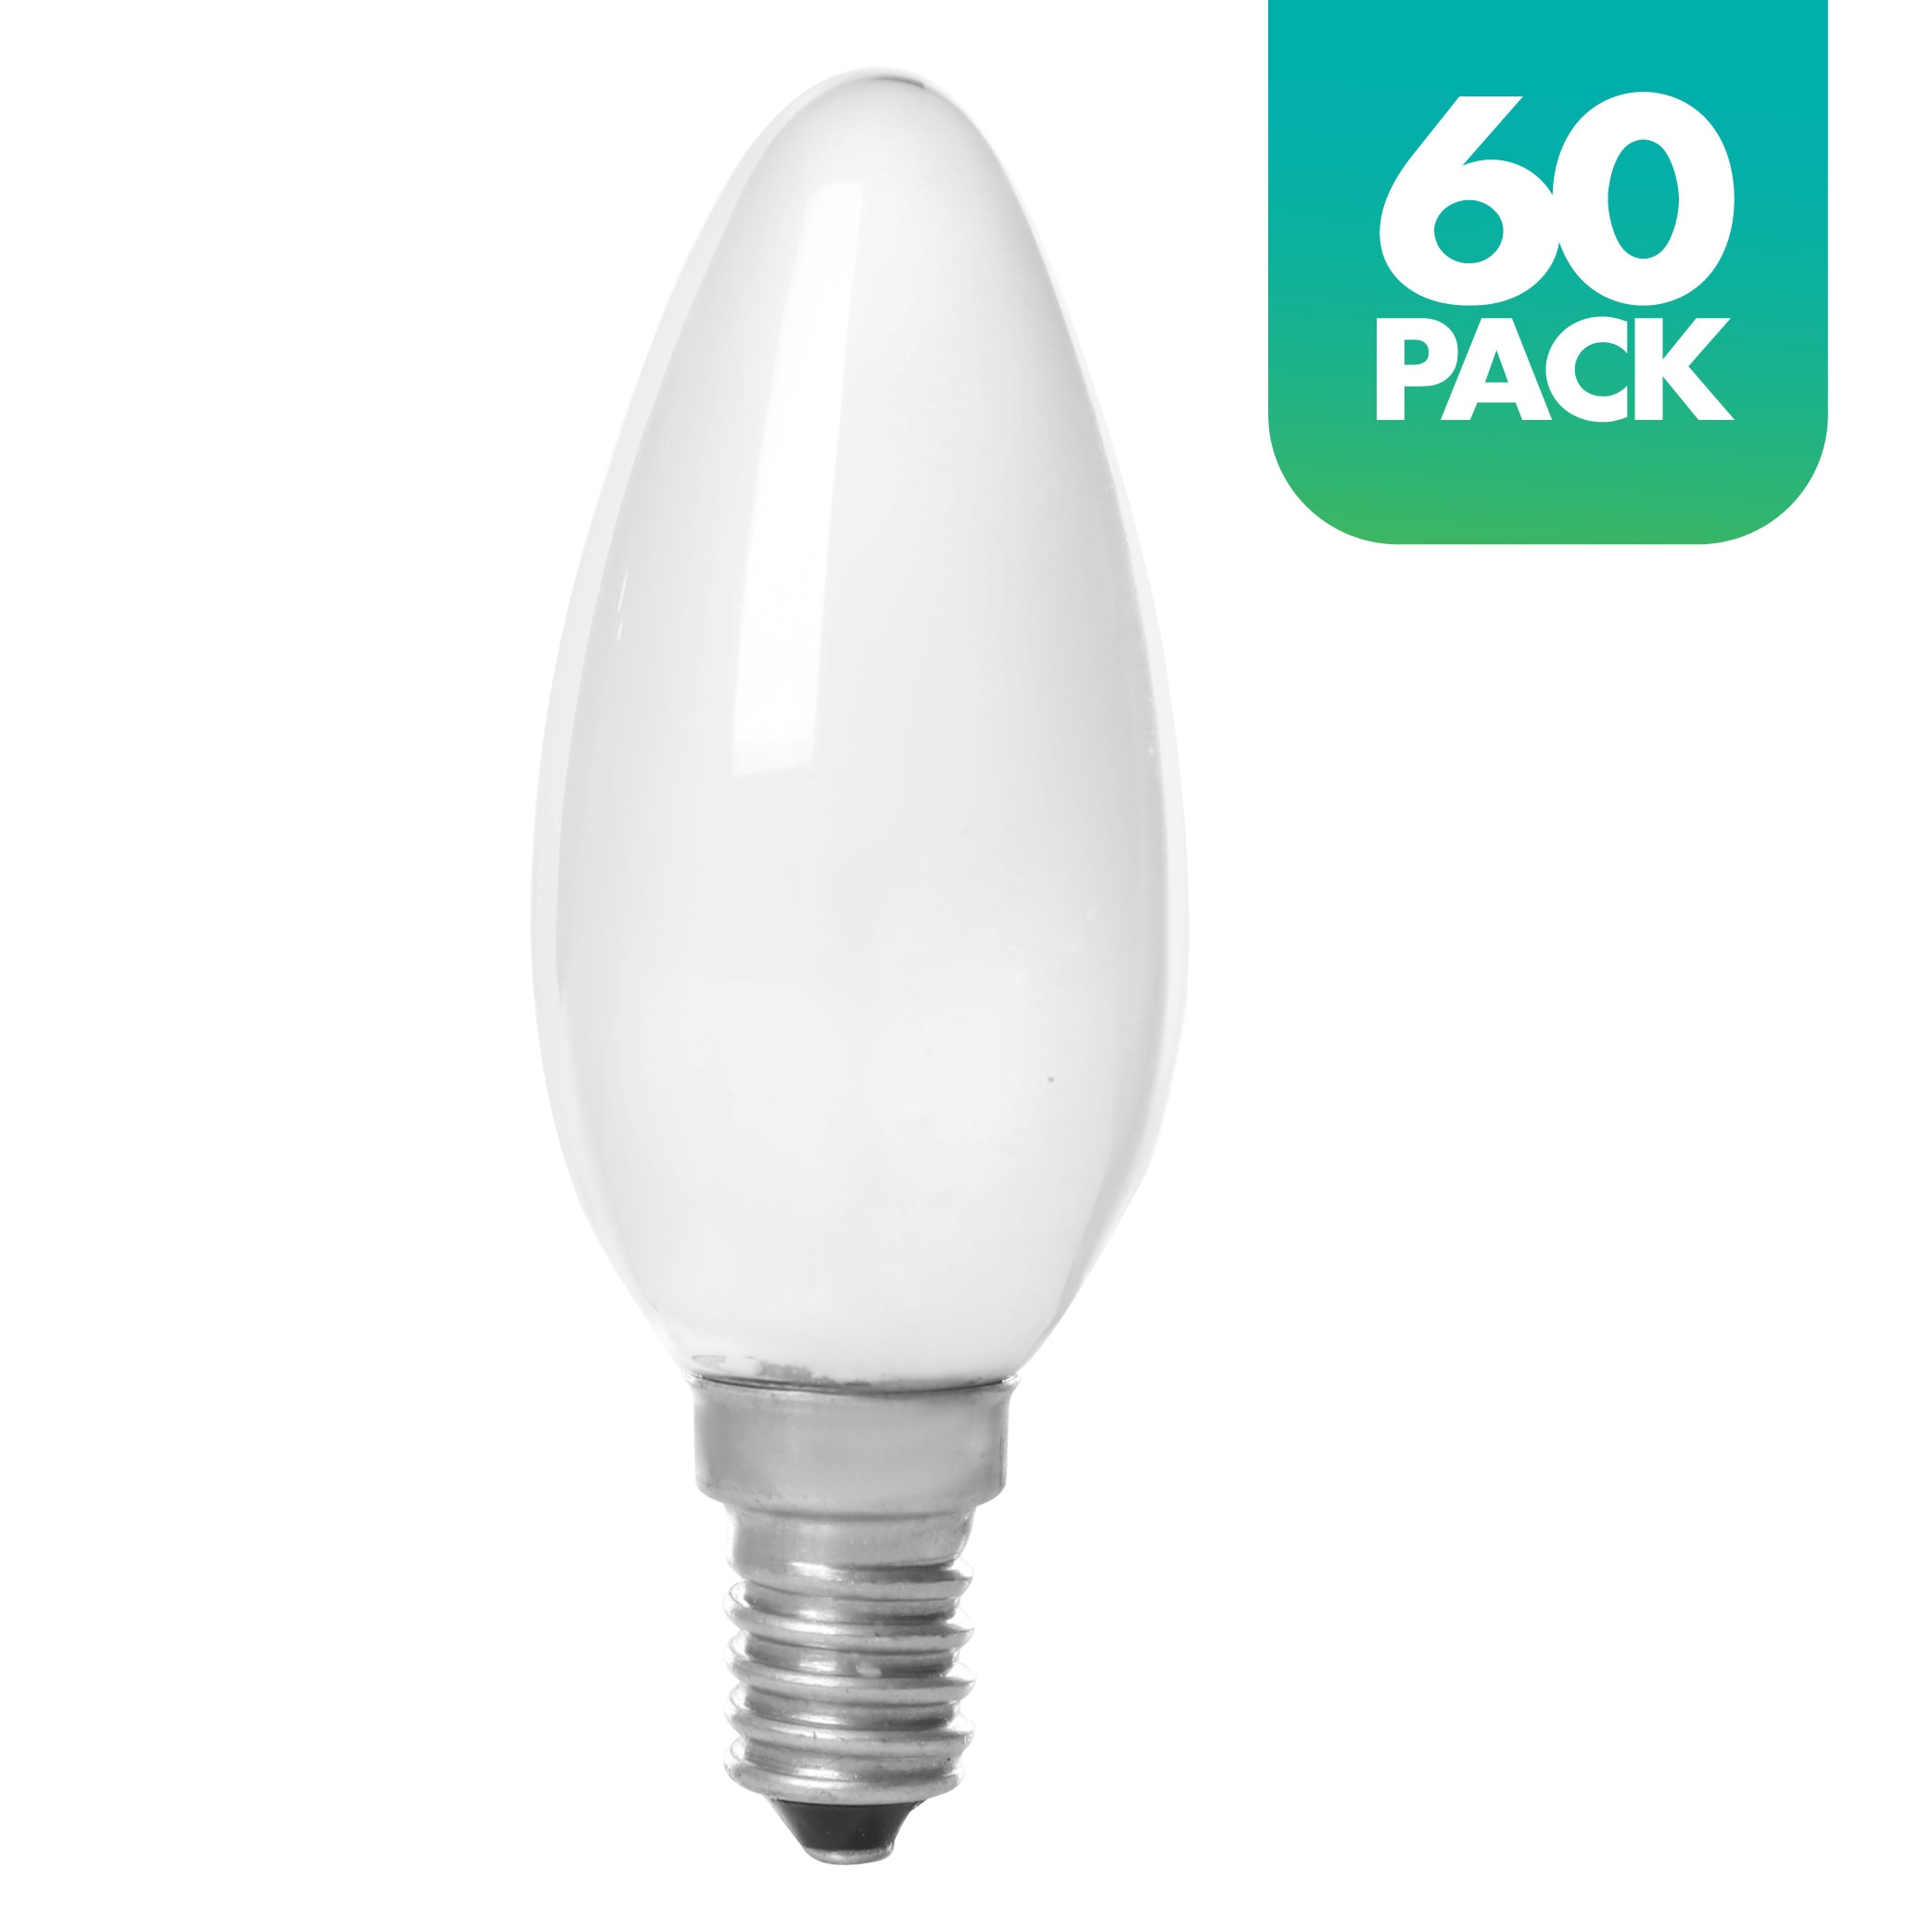 E14 12W LED Candle Light Bulbs, AC85-265V,E14 Base,3000K Warm White,120w  Halogen Light Equivalent Candelabra LED Bulbs for Chandelier Home  Lighting,Pack of 4 